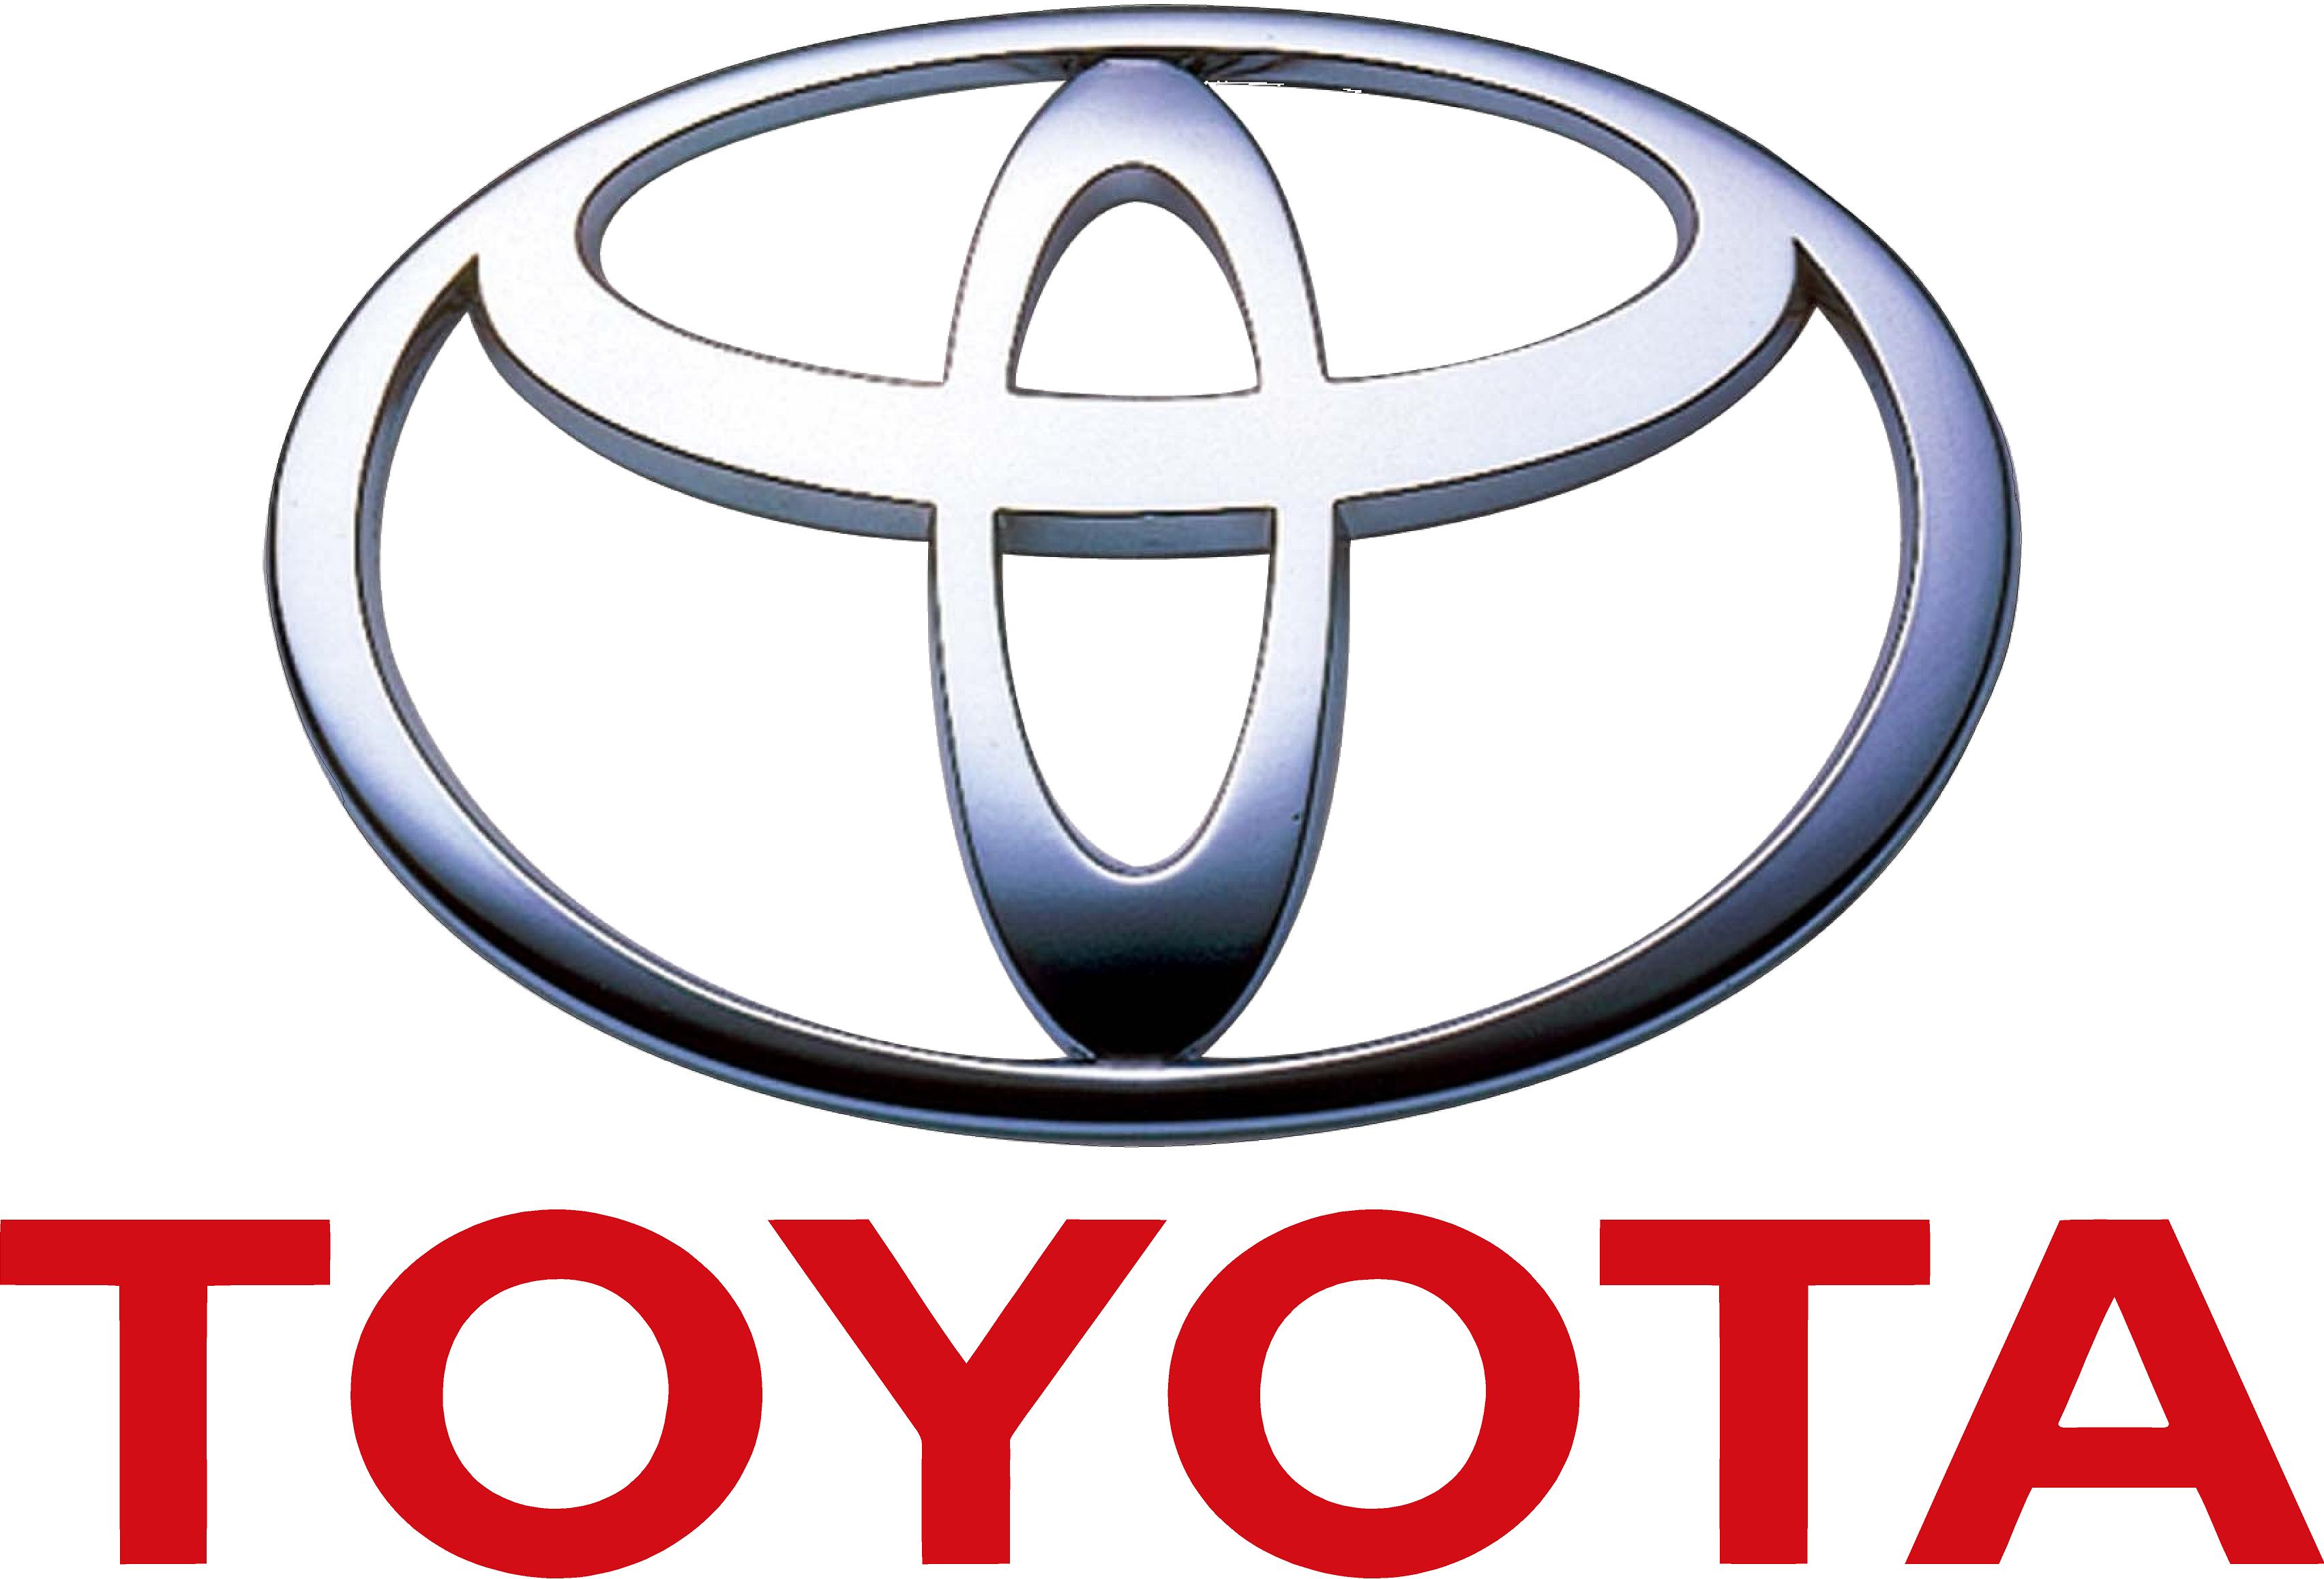 Авто - факт: своим названием марка Тойота обязана числу 8